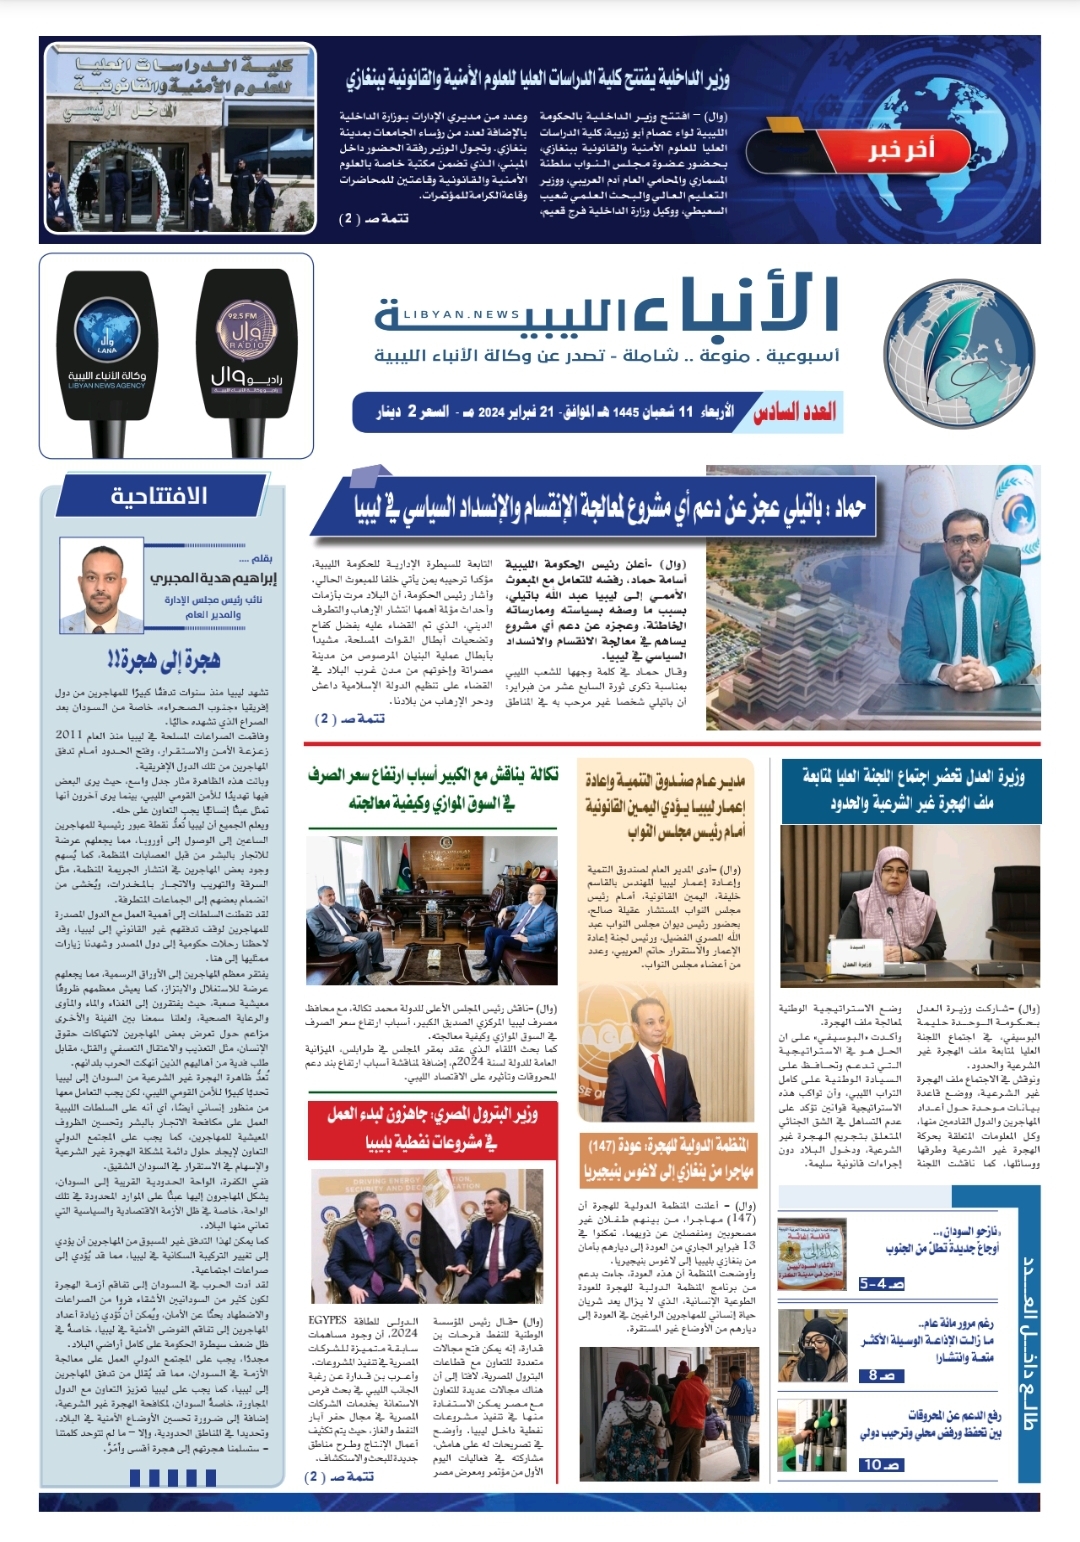 صحيفة الأنباء الليبية (العدد السادس)